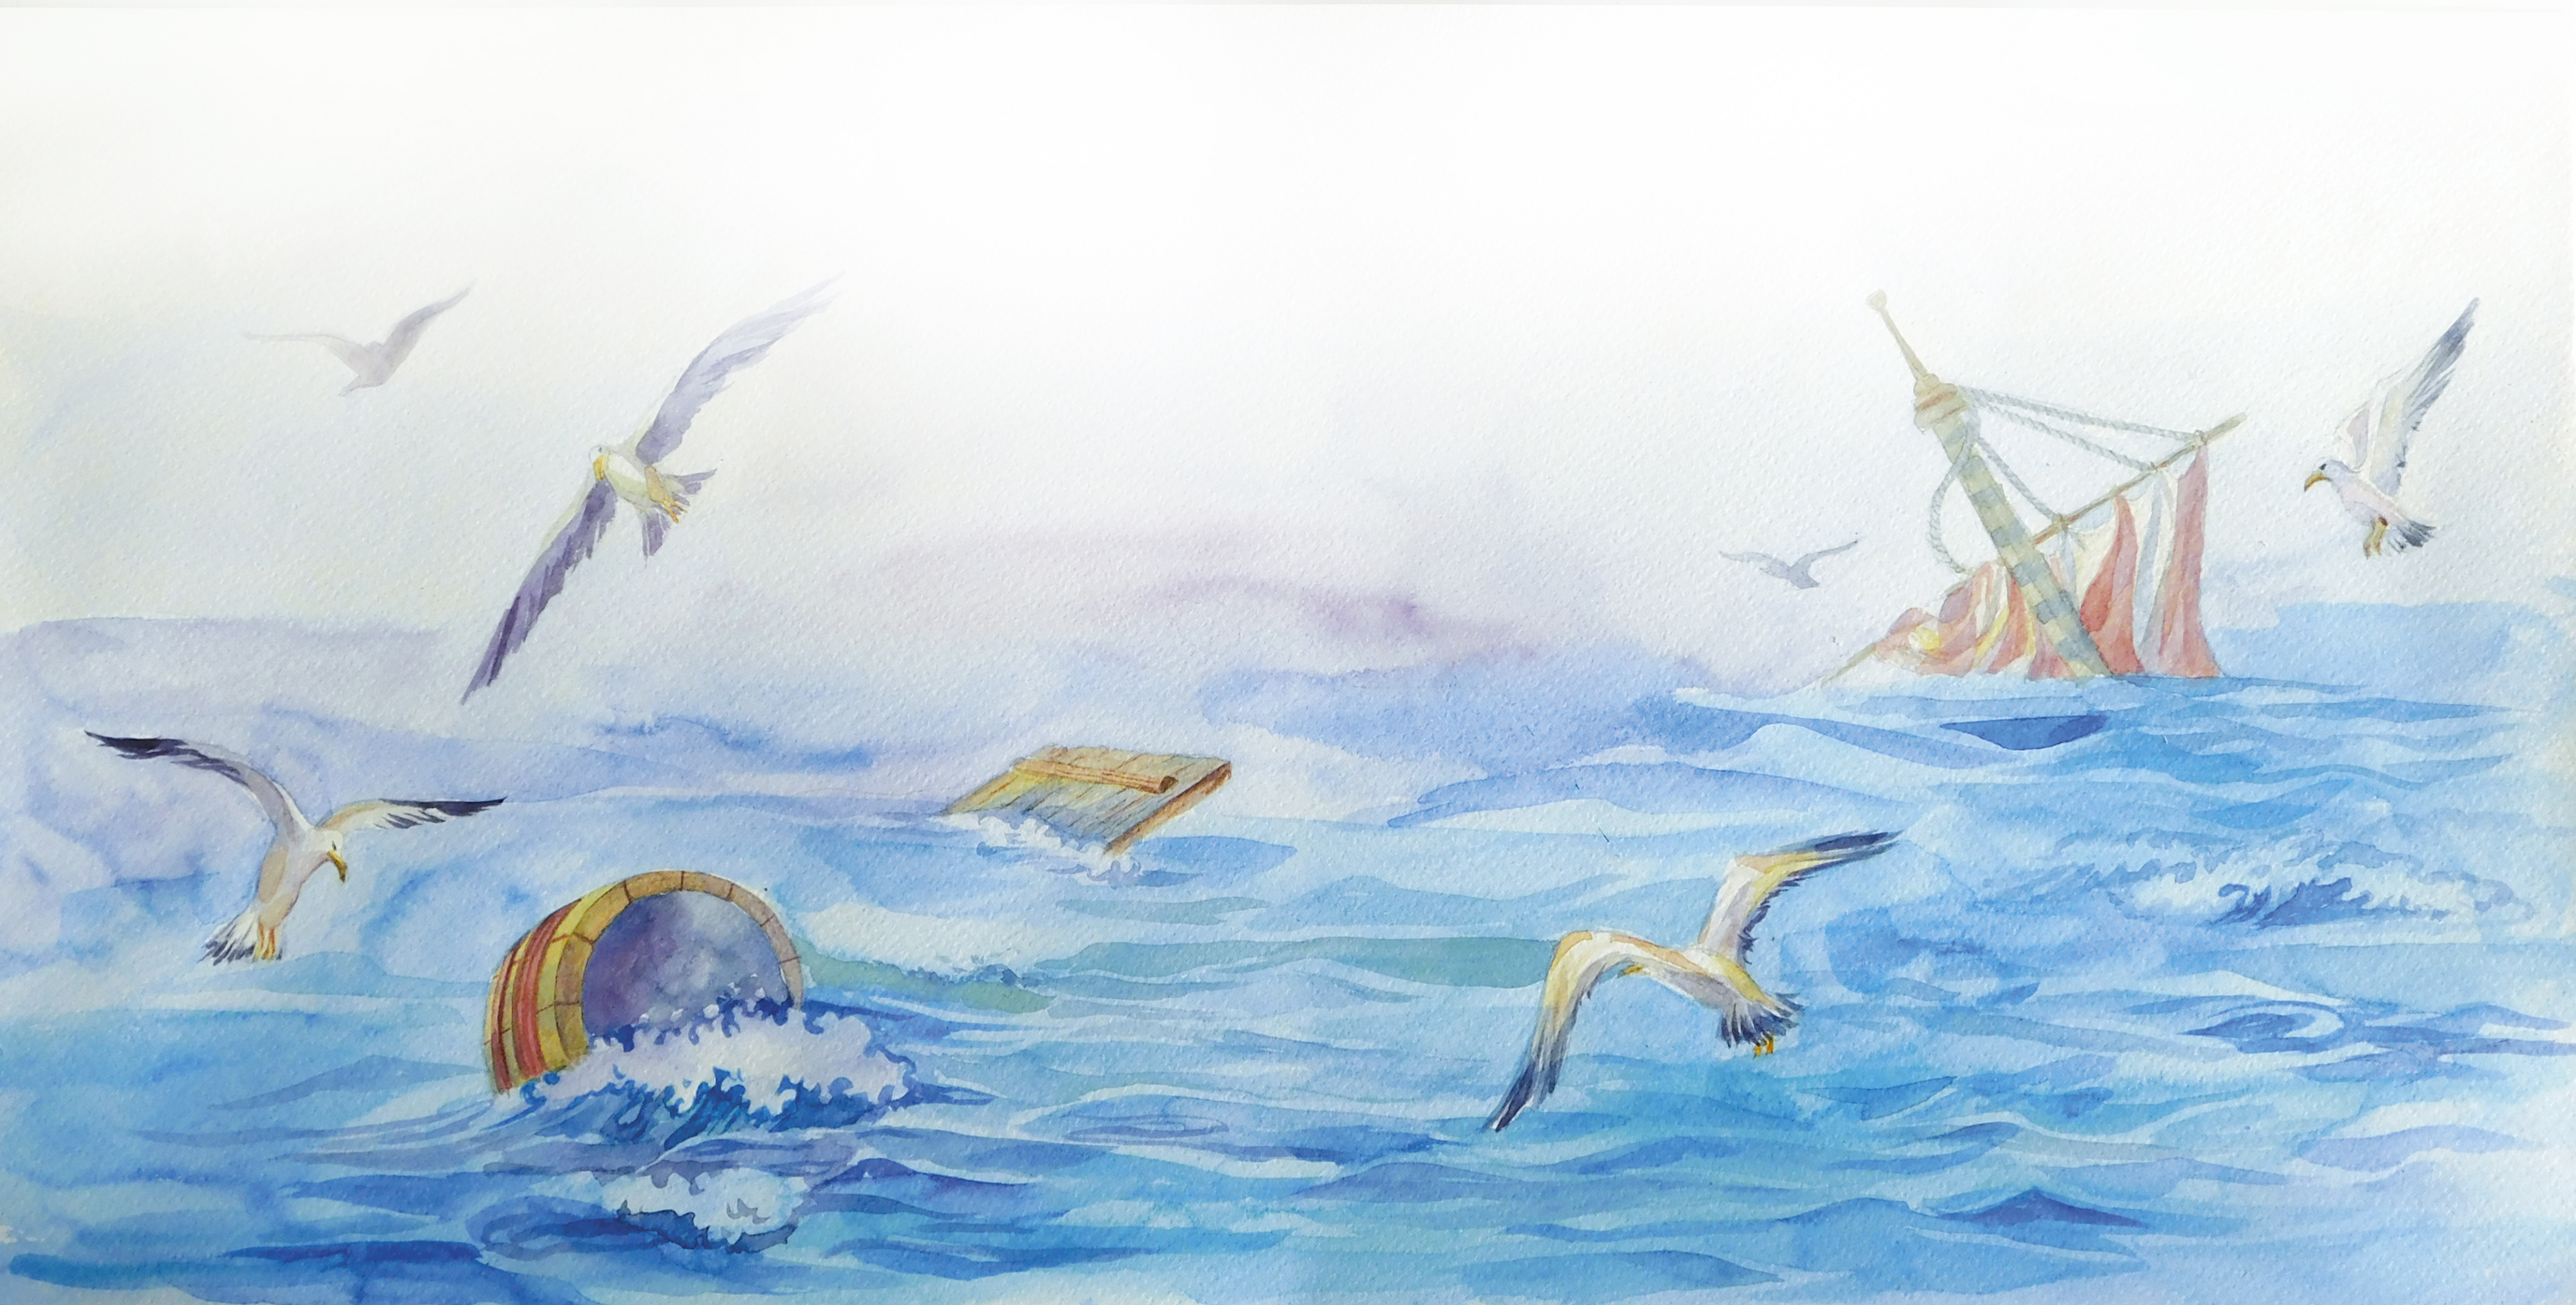 Иллюстрация к мореходу Никитину